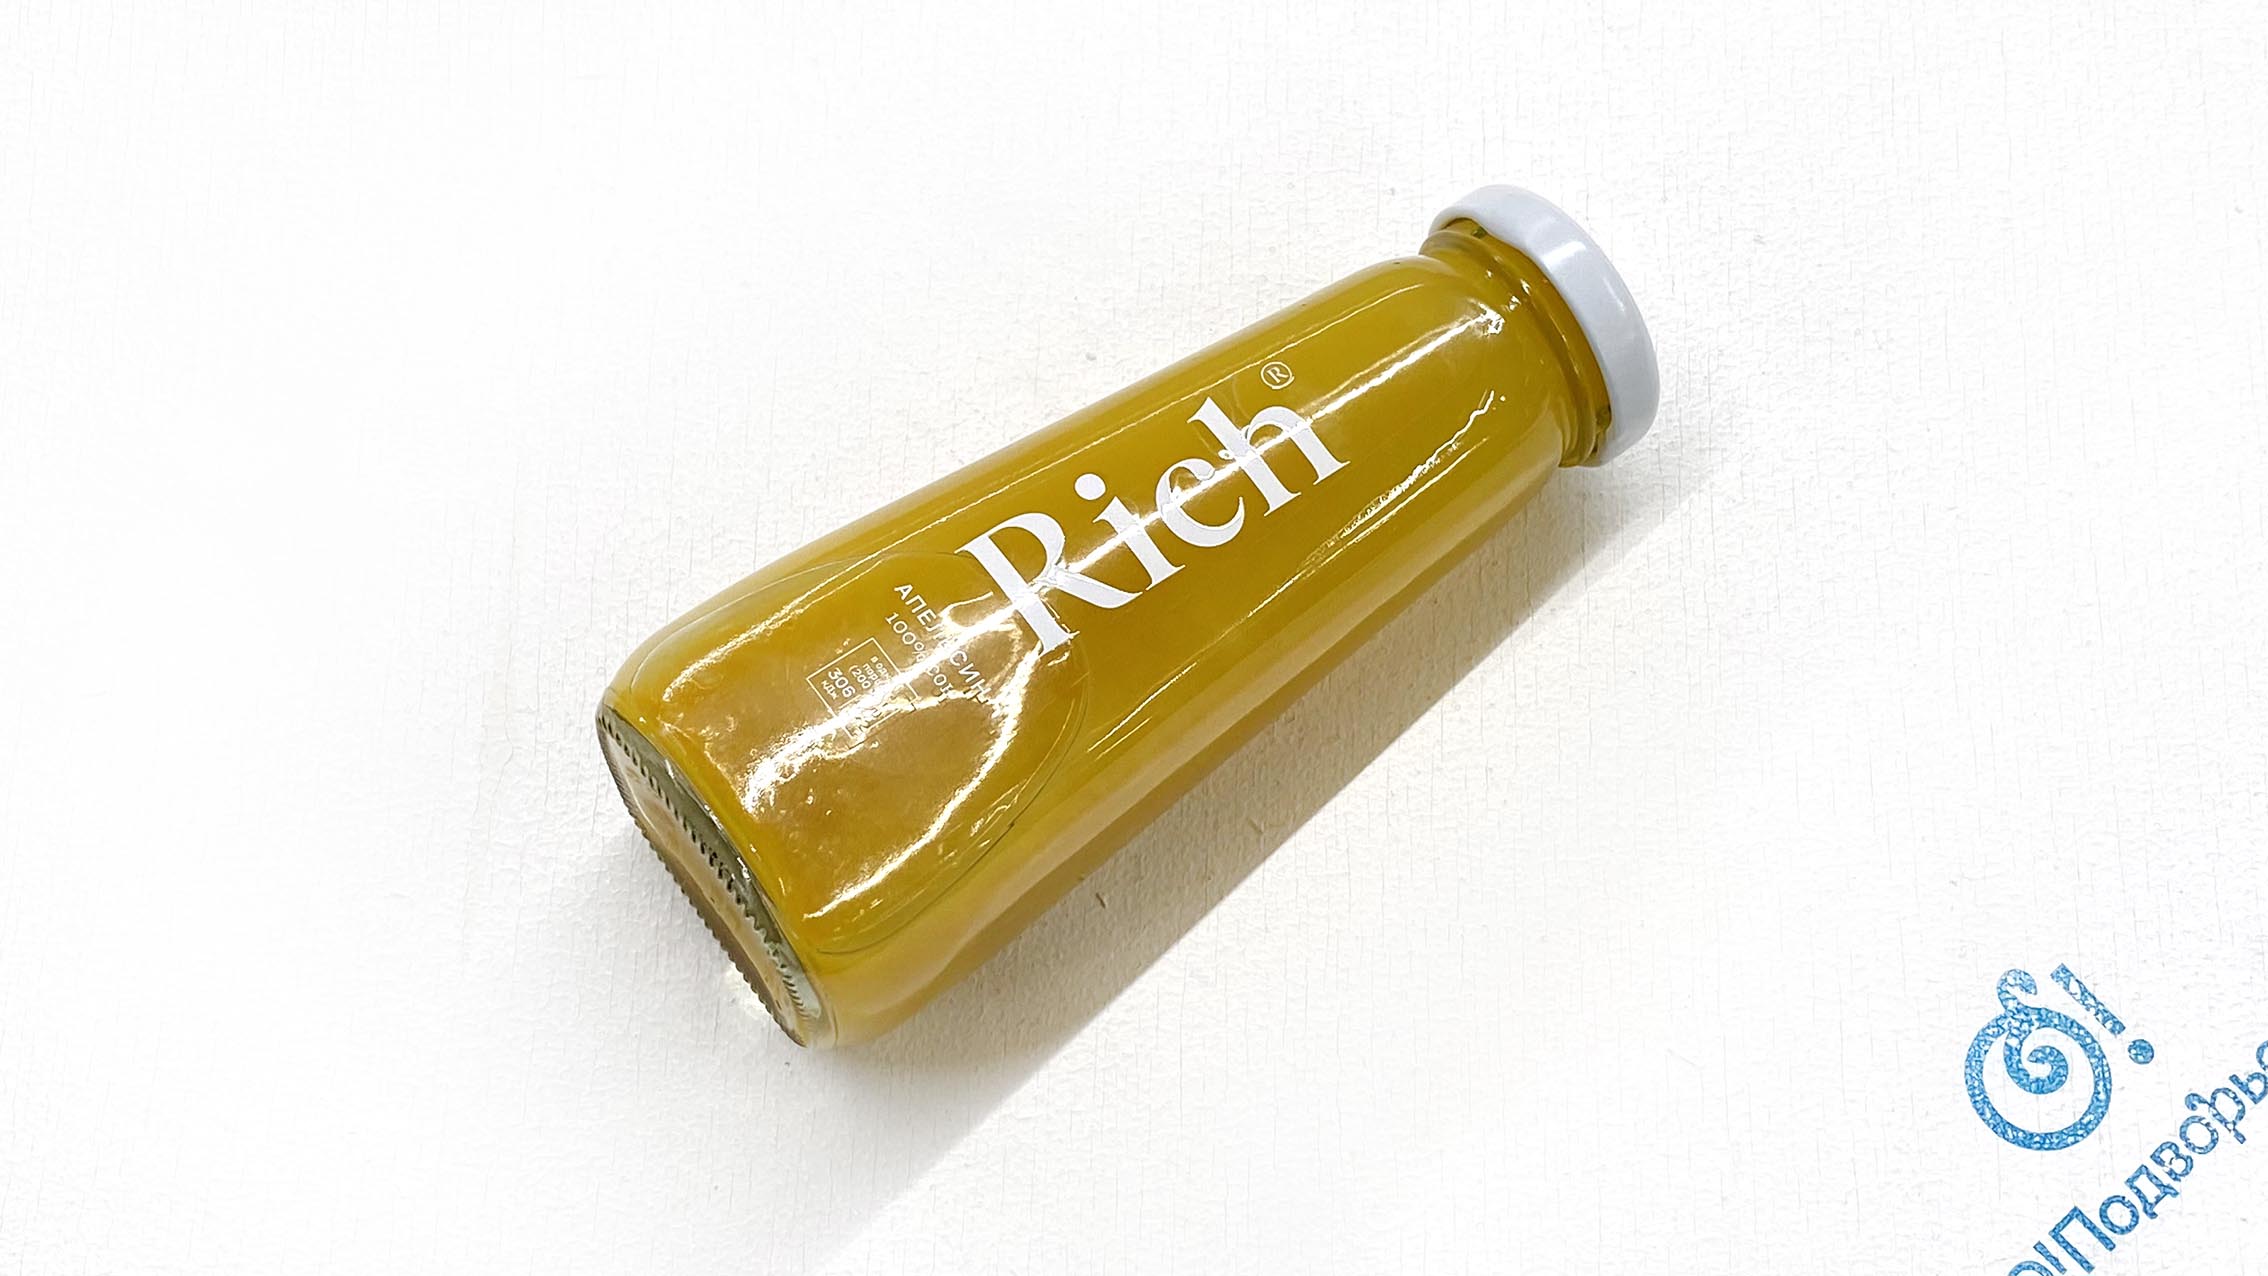 Апельсиновый 100% сок "Rich", осветленный, 0,2 литра,(Зл)